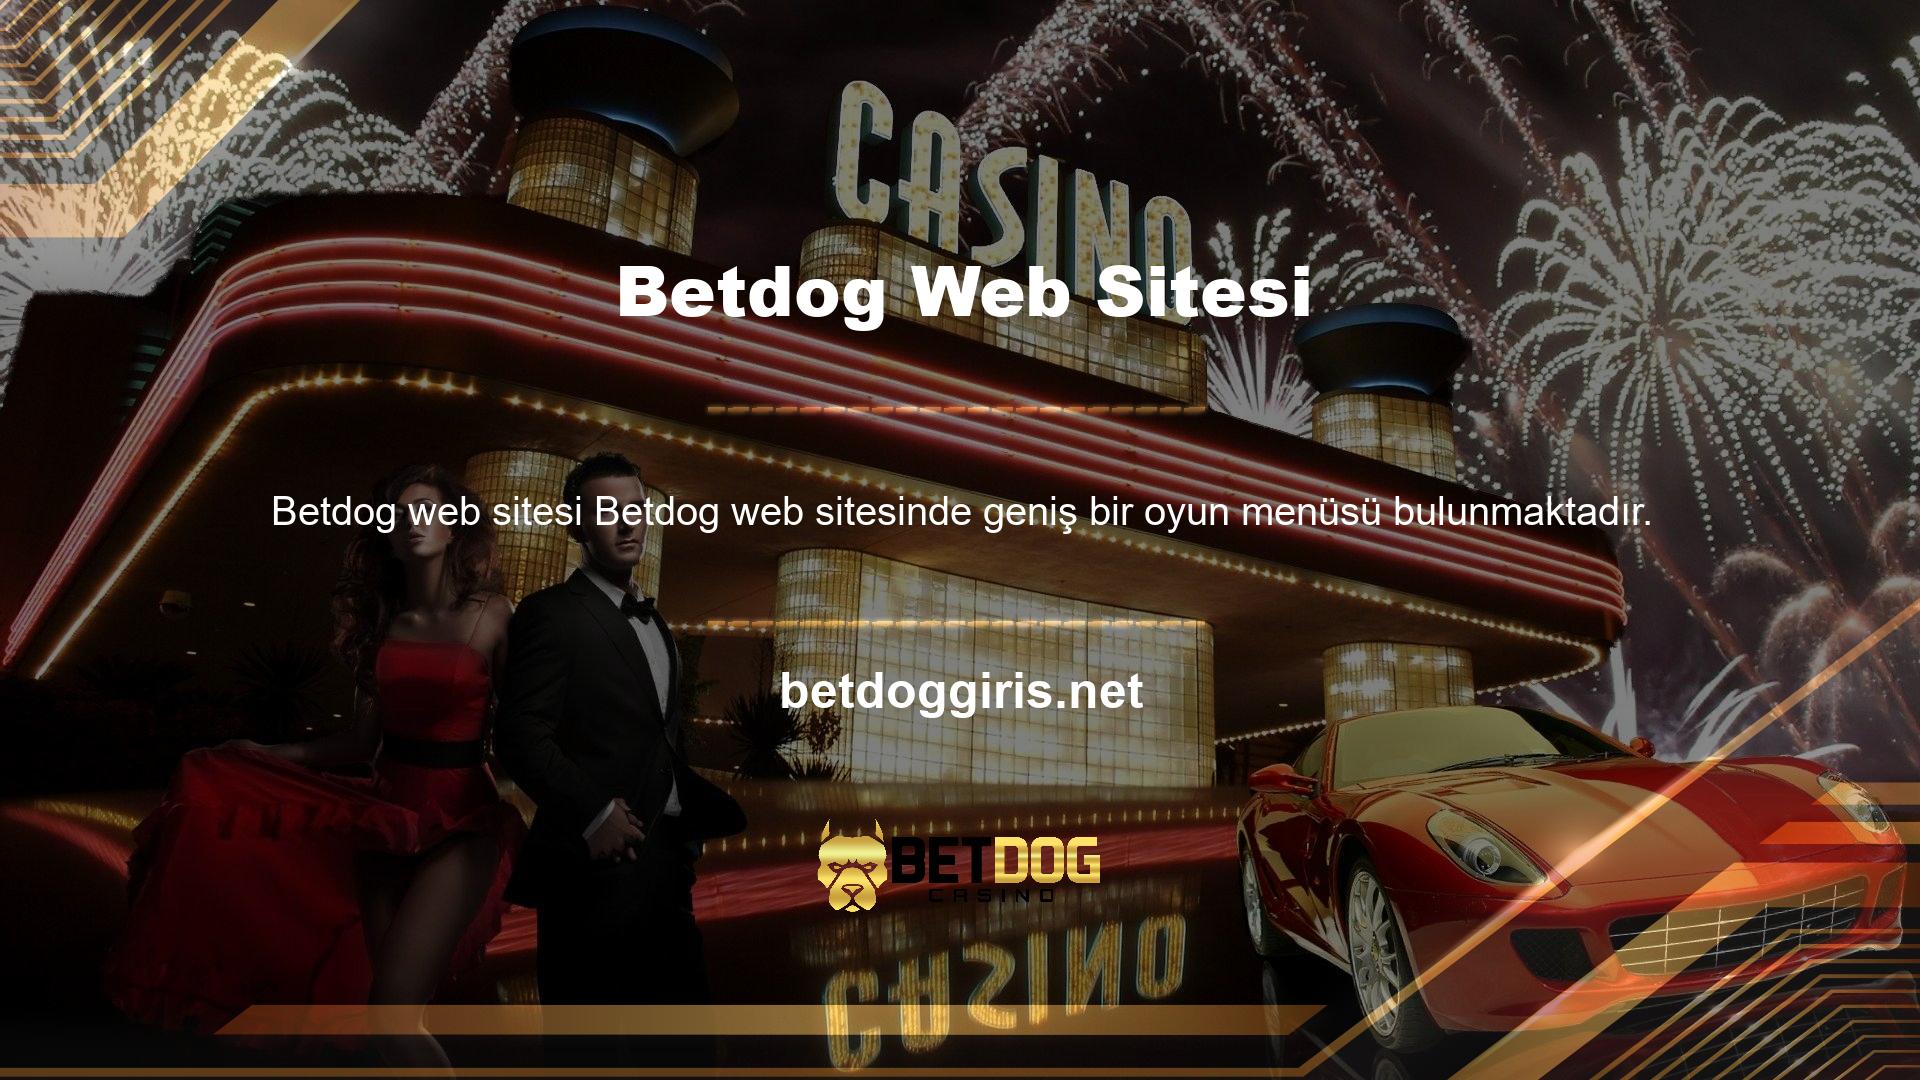 Bu site spor oyunu meraklıları ve casino hayranlarıyla doludur